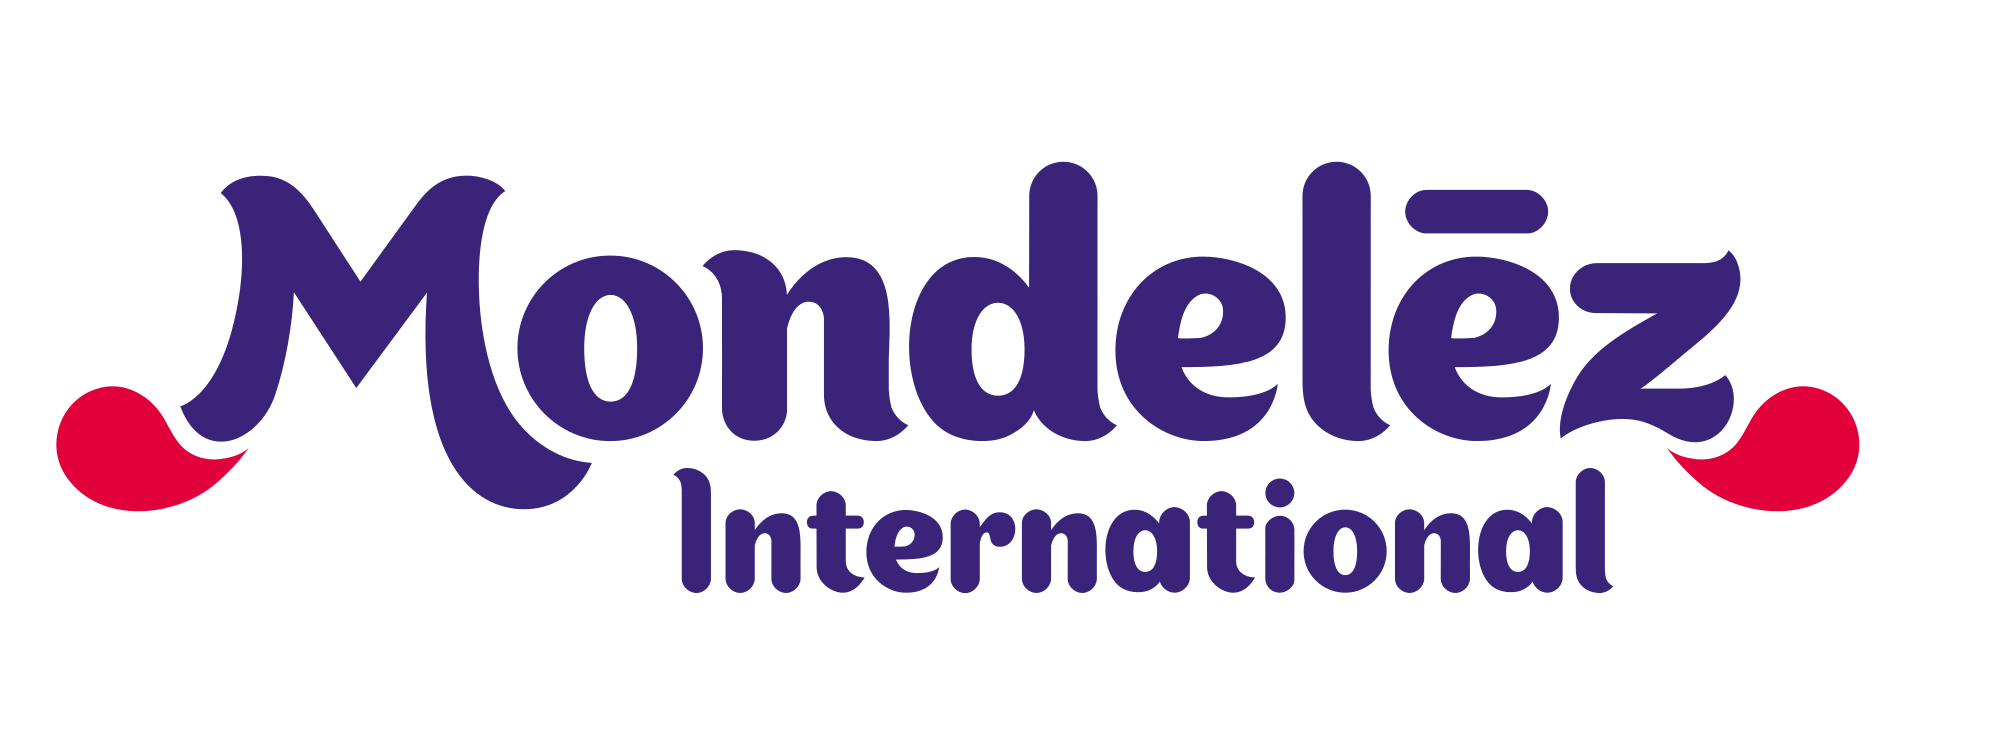 Mondelēz International – globalny raport społecznej odpowiedzialności za 2015 r.